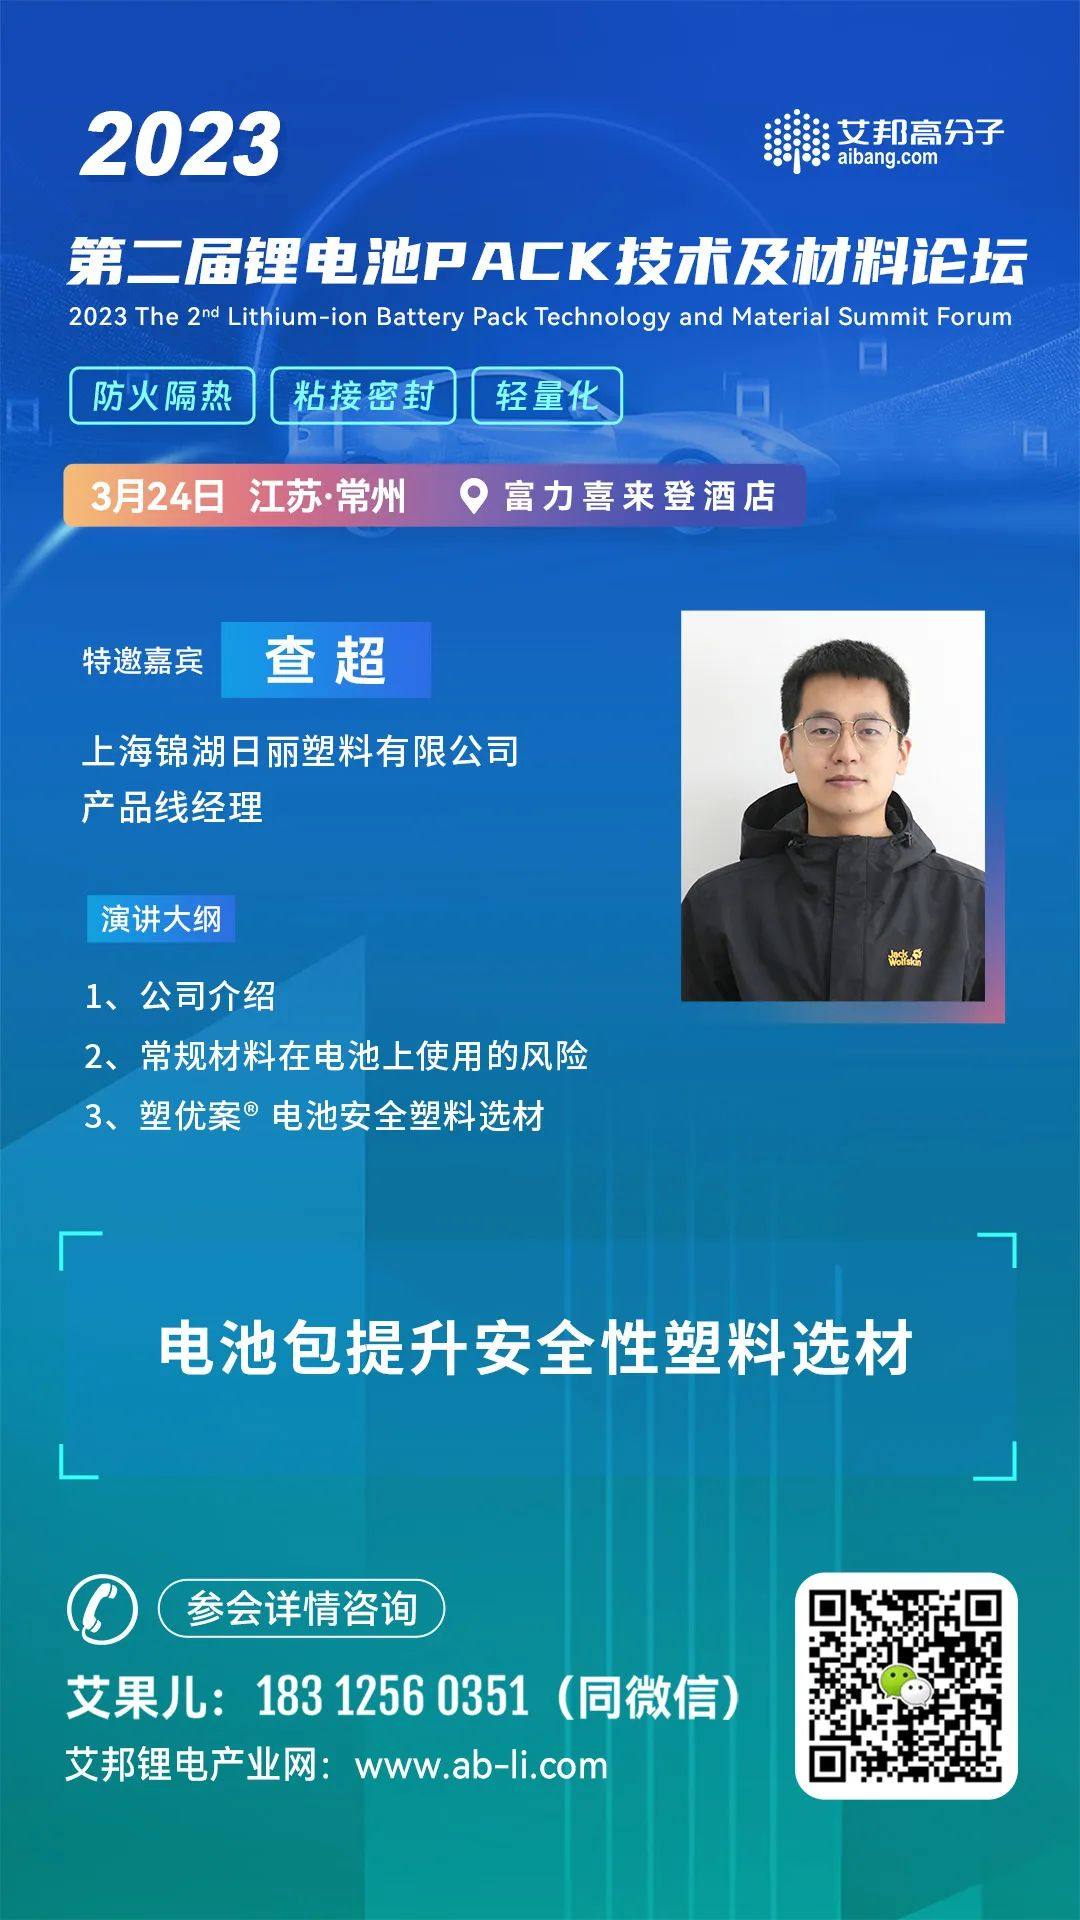 锦湖日丽将出席“2023年第二届锂电池PACK技术及材料论坛”并做主题演讲